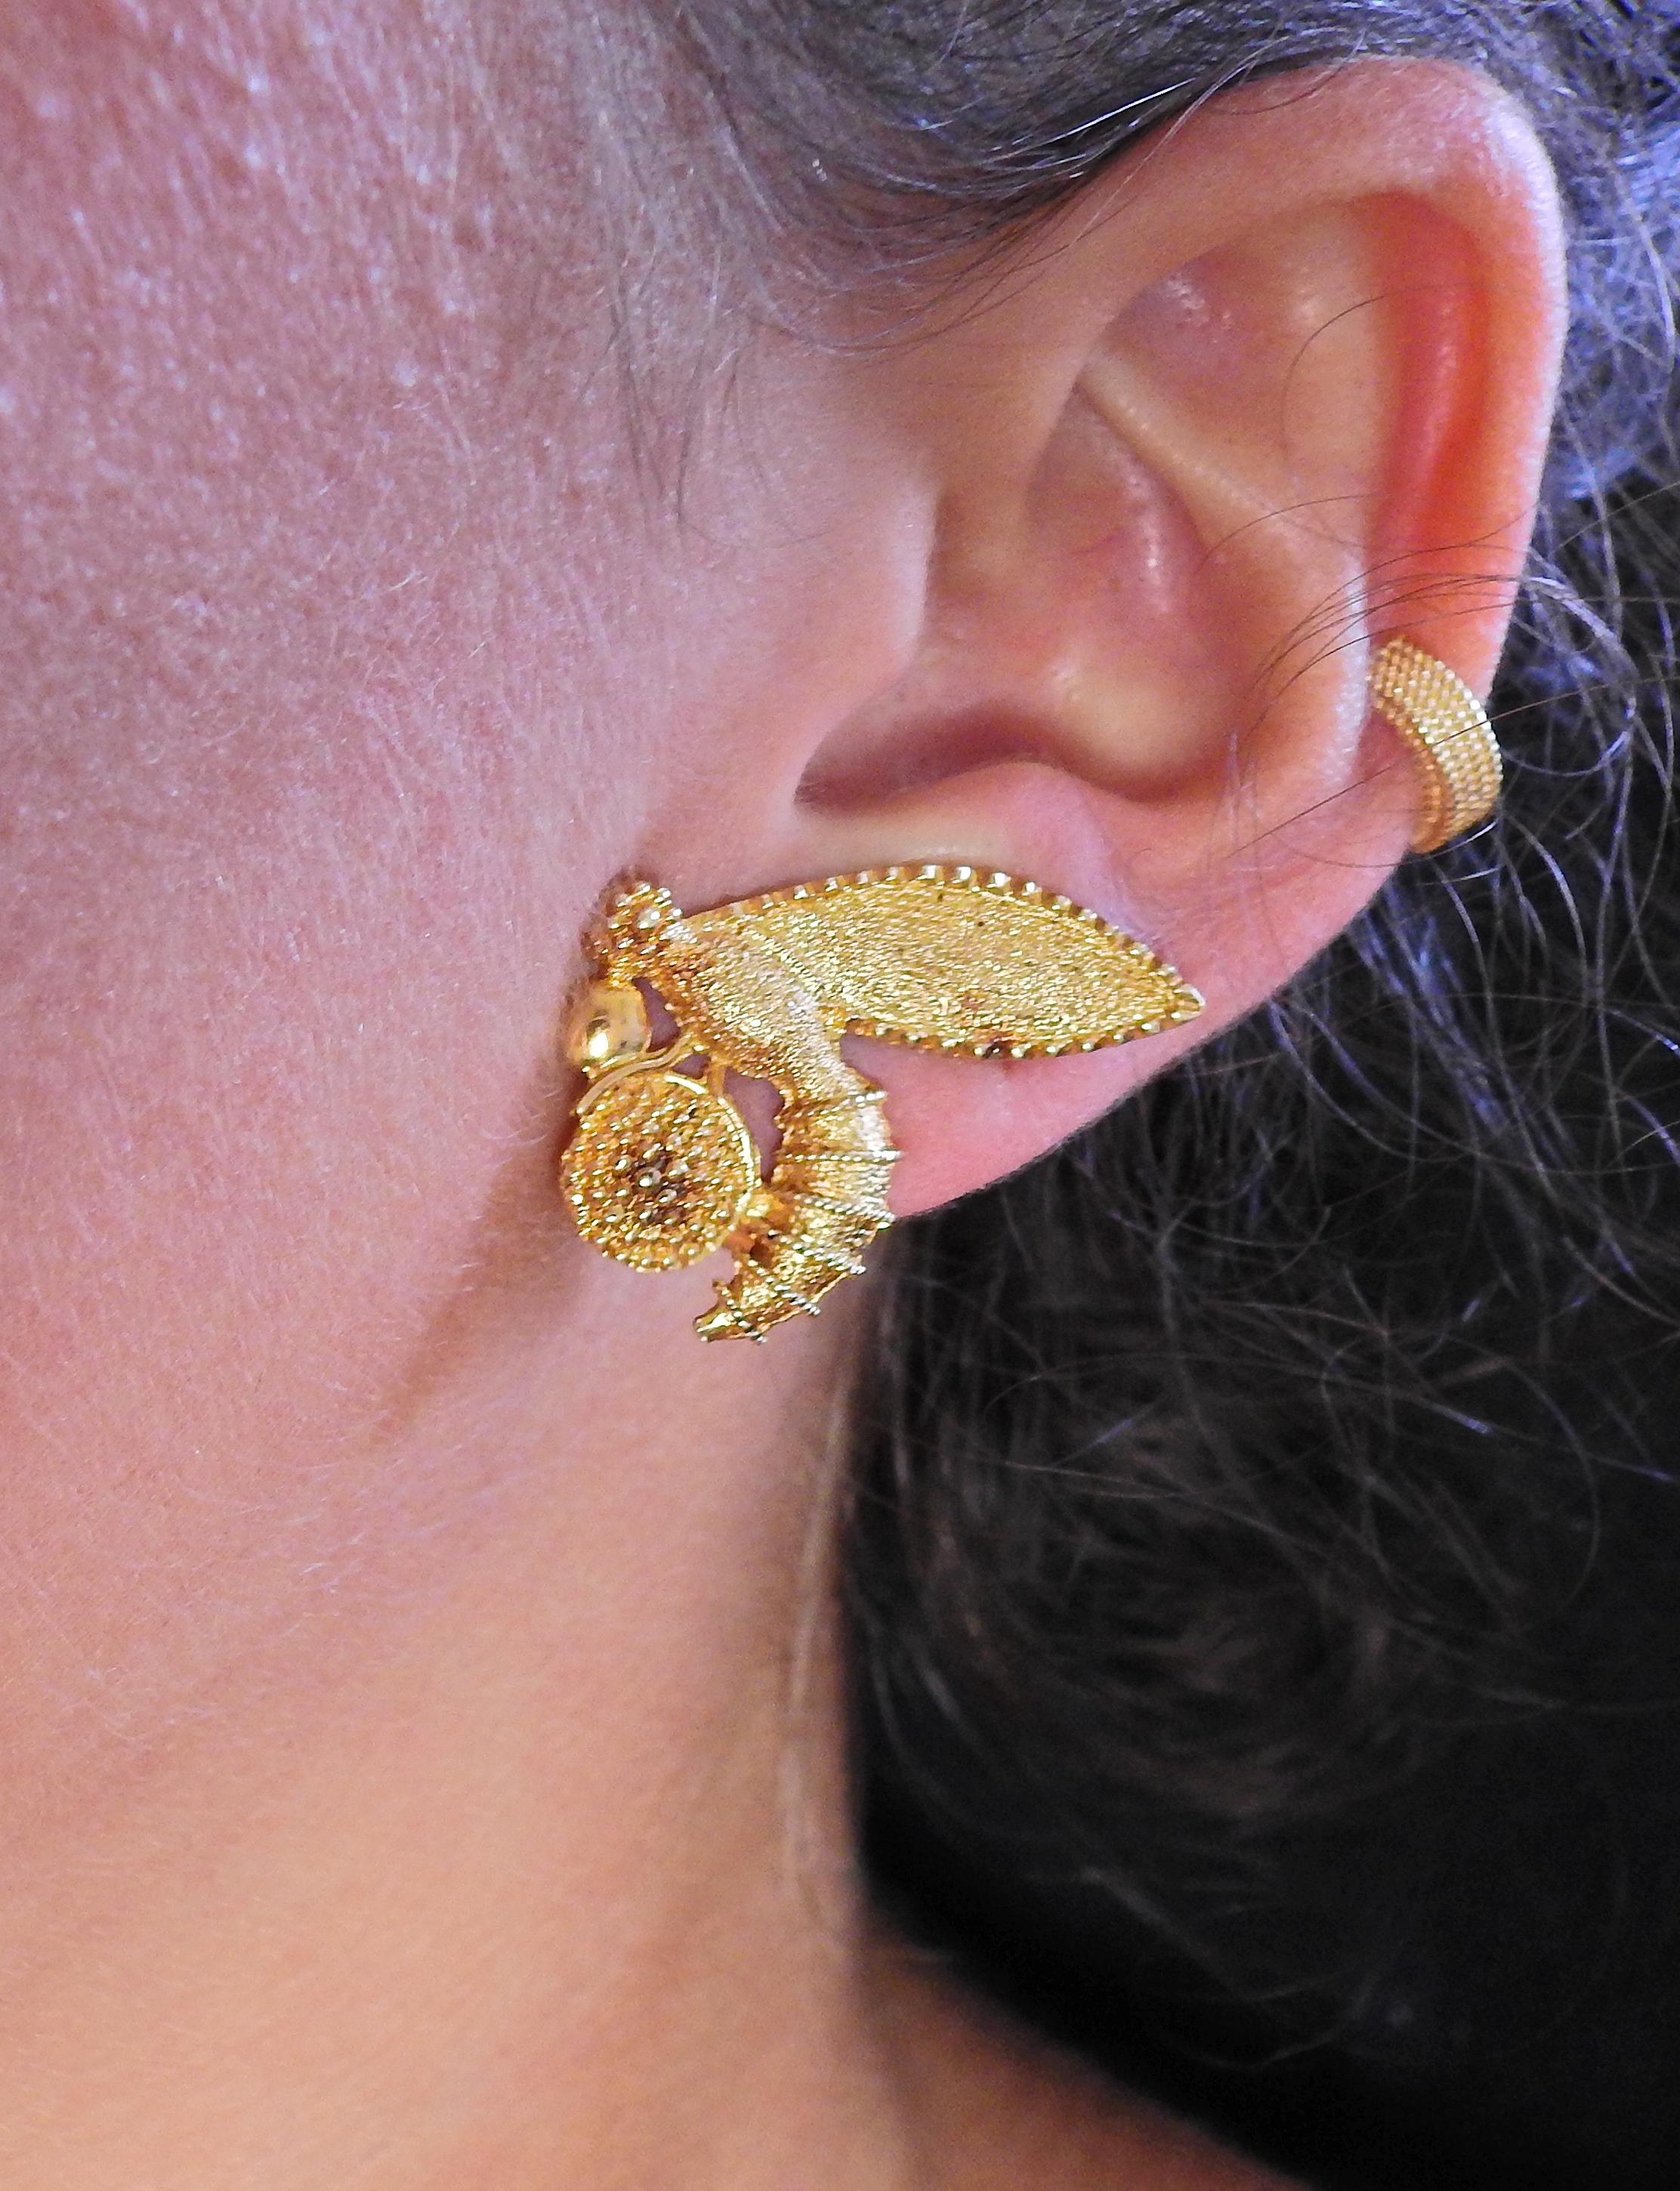 zolotas earrings